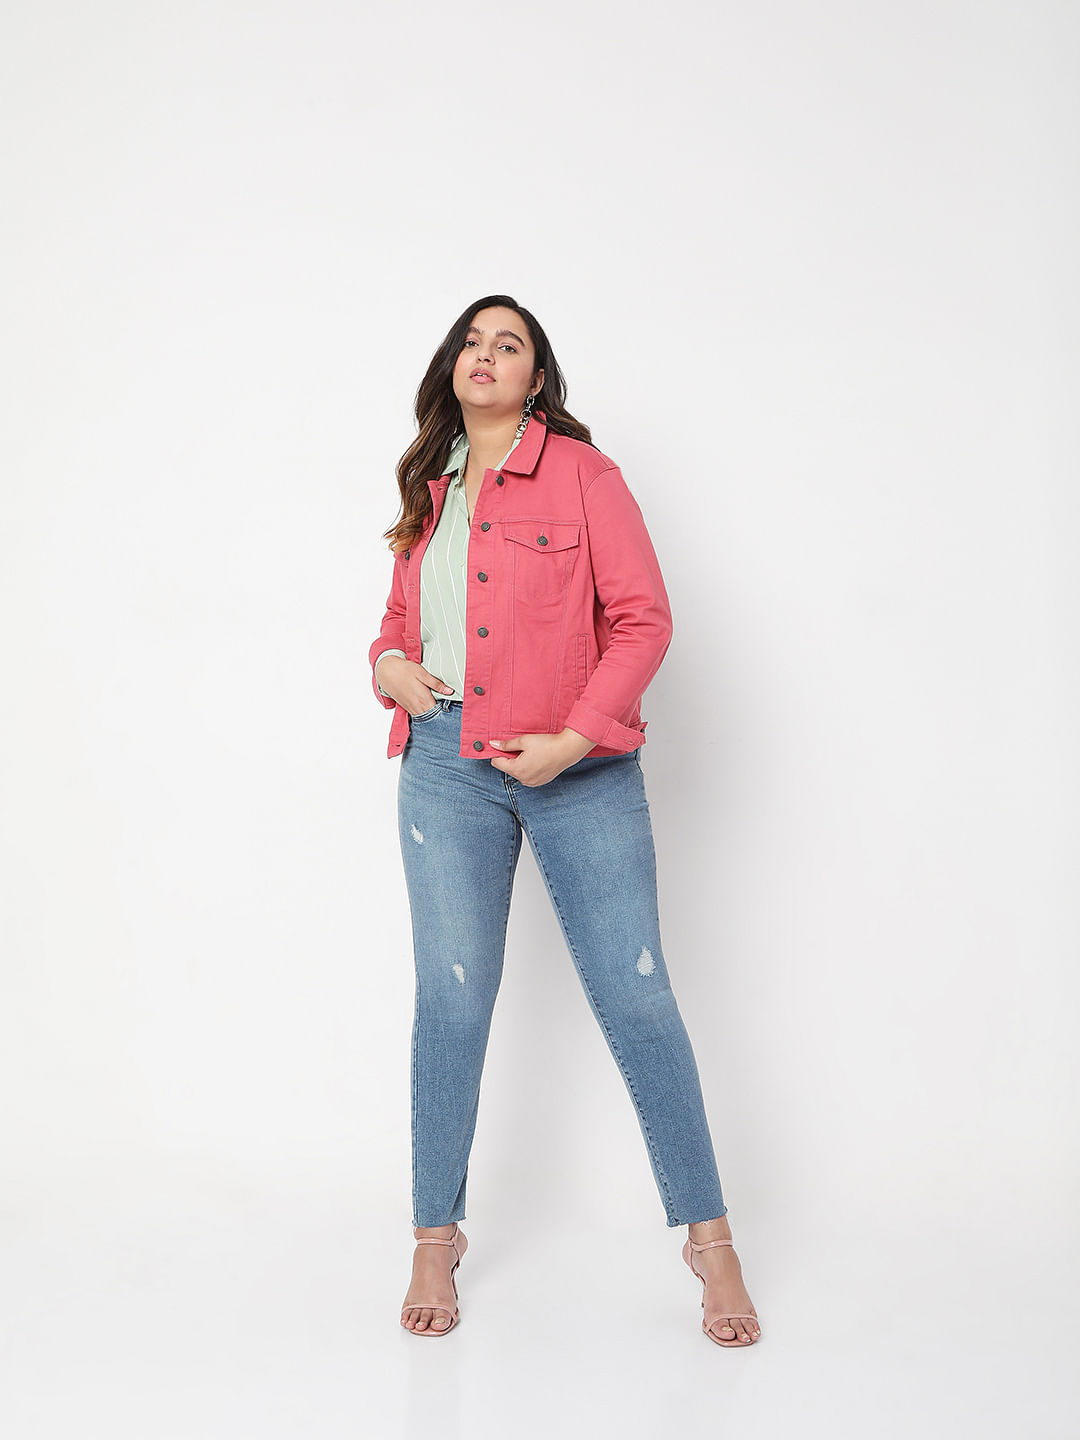 Buy Pink Denim Jacket for Women Online